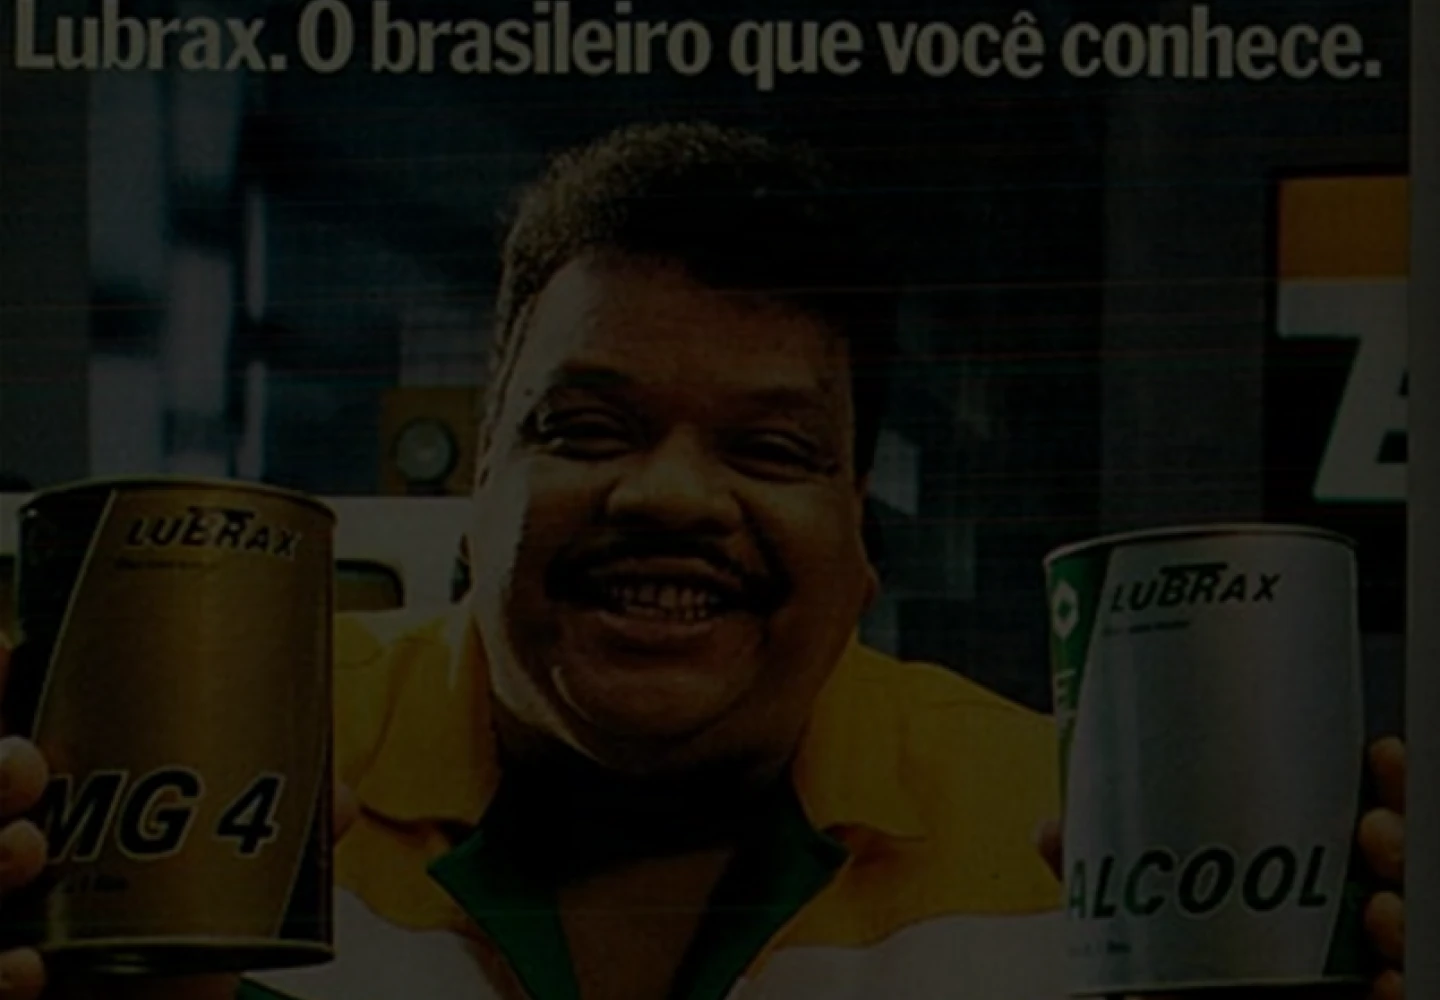 Anúncio de revista da linha Lubrax tendo o cantor Tim Maia como garoto-propaganda. O título é “Lubrax; O brasileiro que você conhece.”